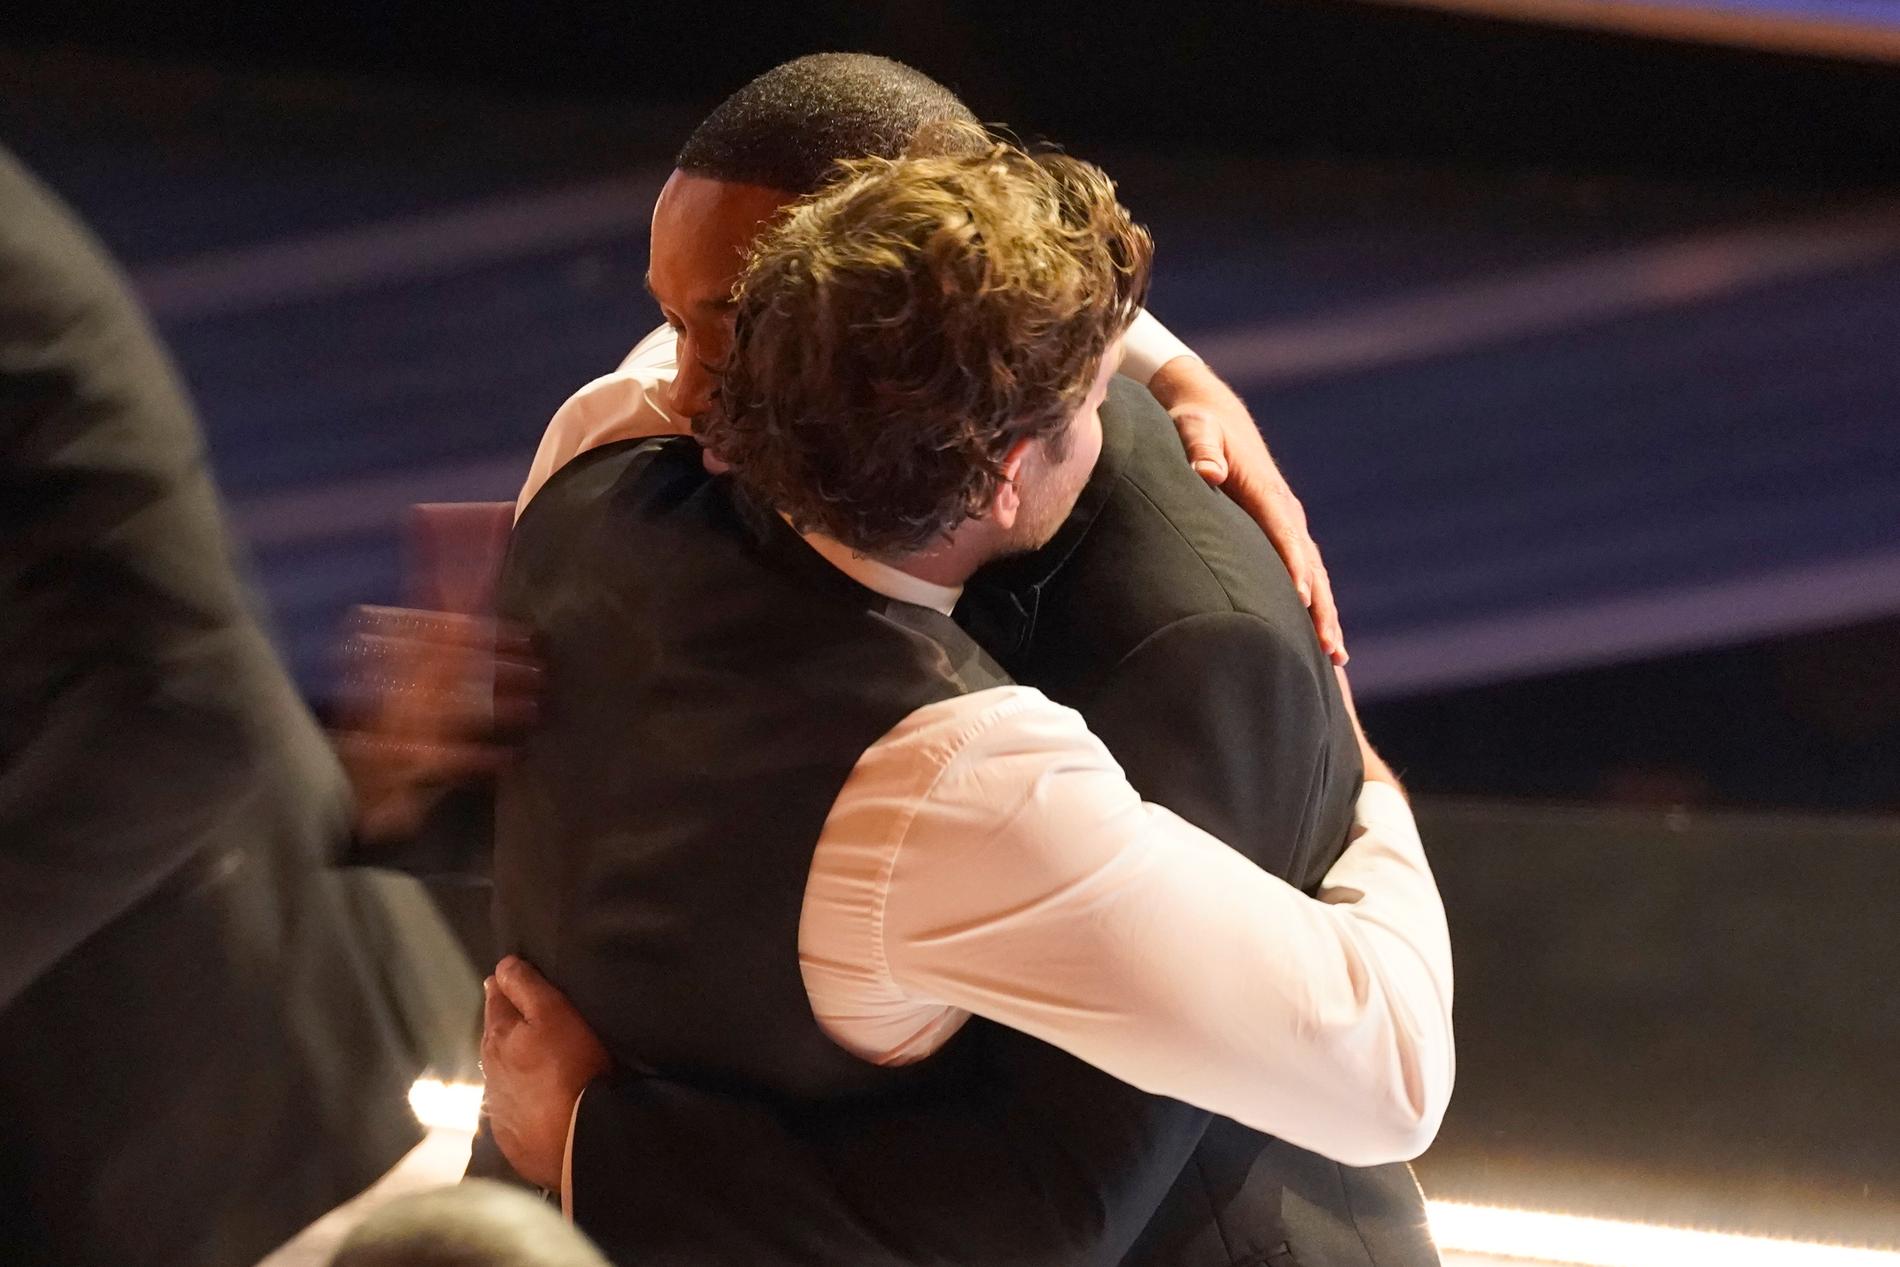 Bradley Cooper kramar om Will Smith efter skådespelarens utbrott där han slog till Chris Rock